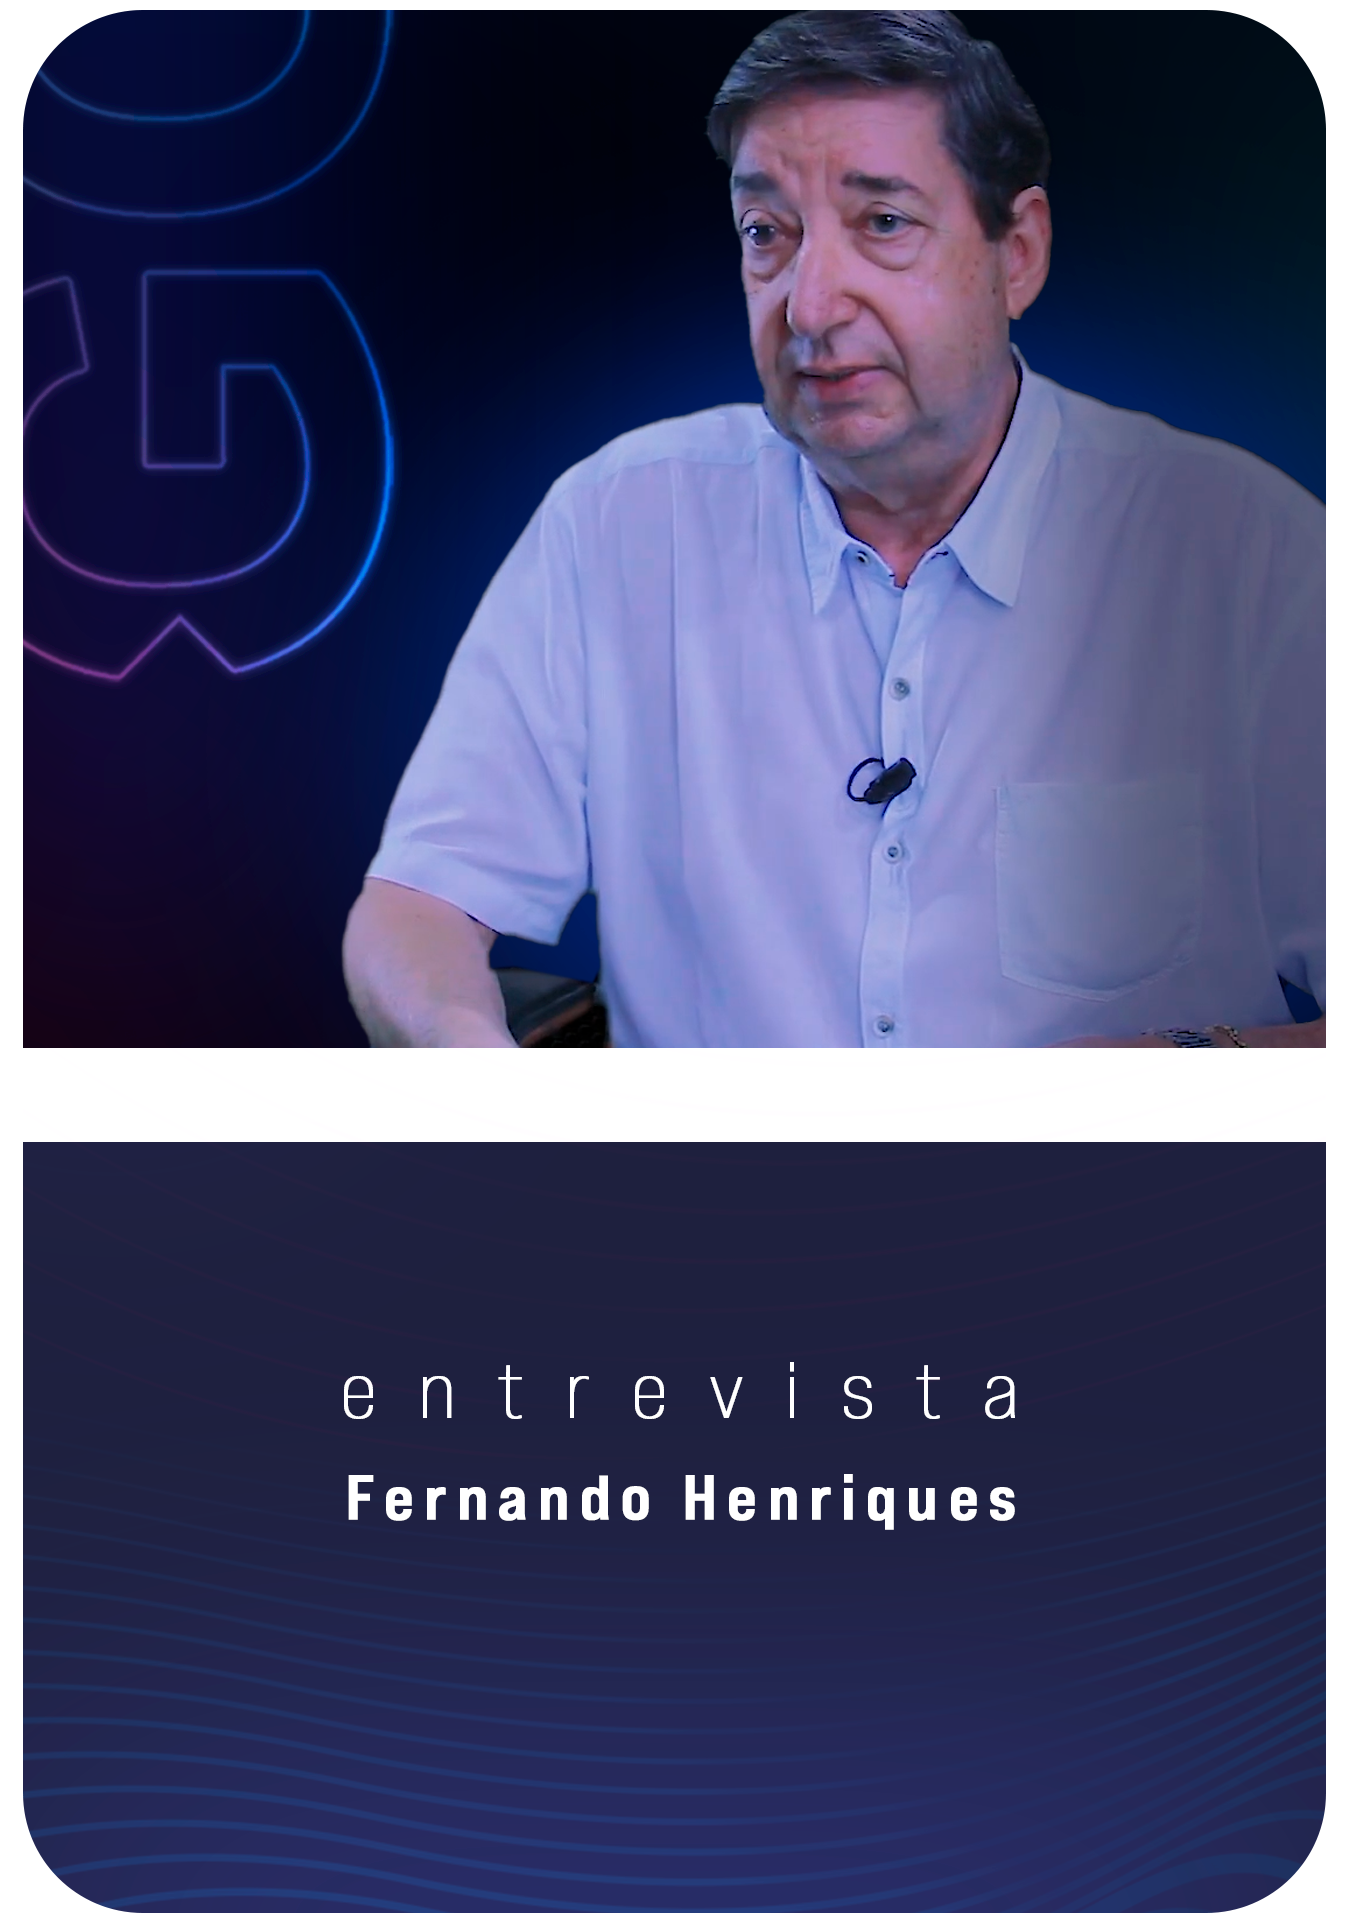 Dr. Fernando Henriques